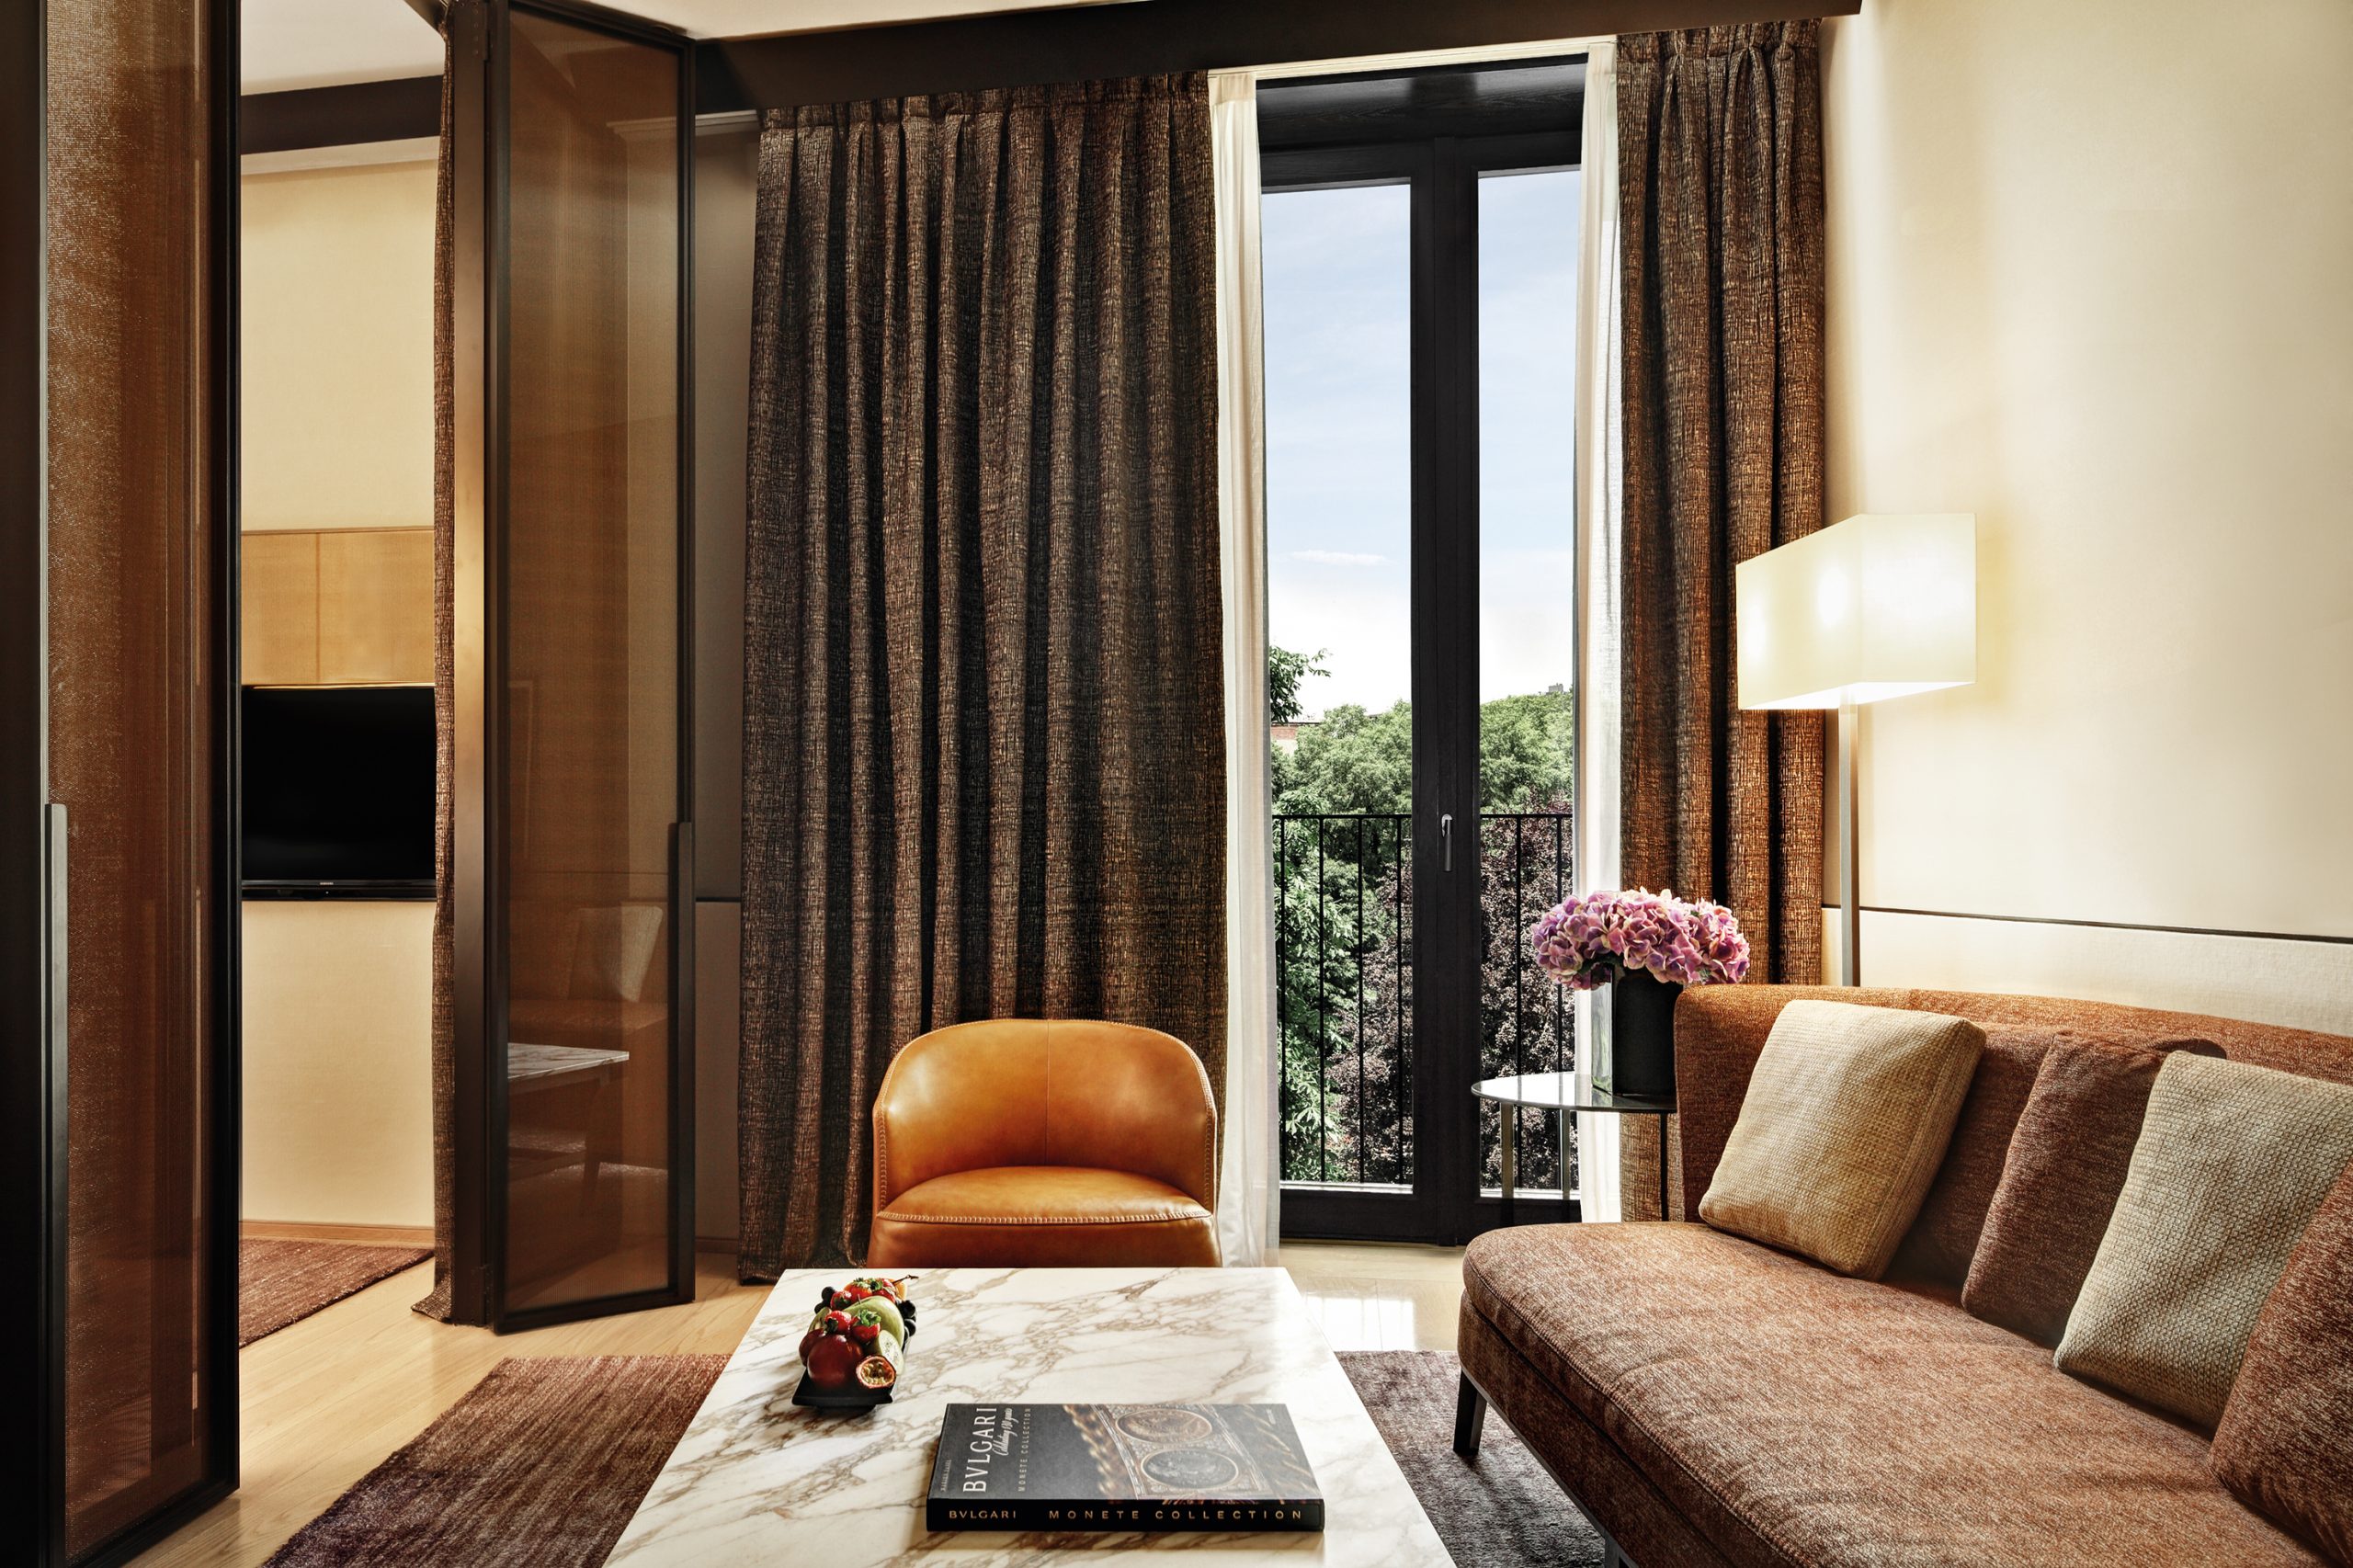 Luxury Hotels: Bvlgari Hotel Milano By Antonio Citterio Viel